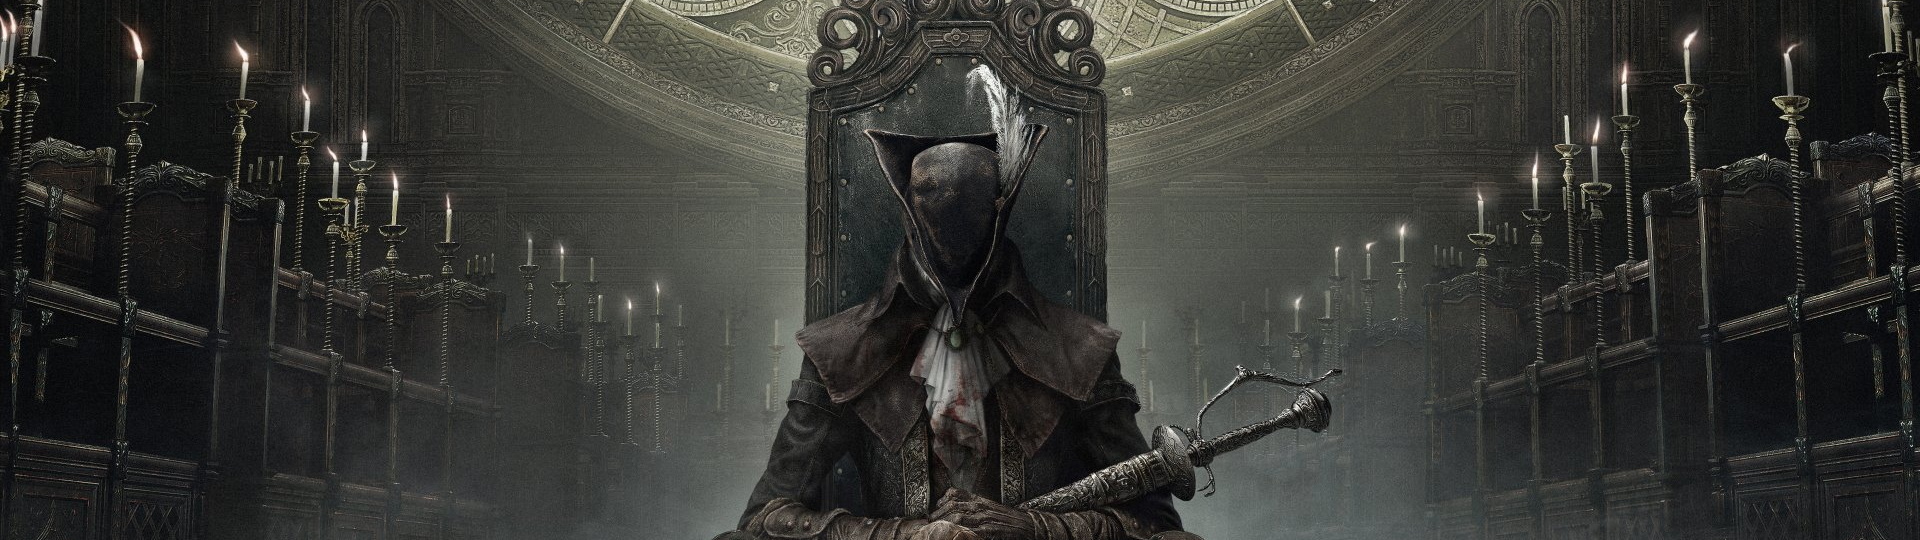 Producent Bloodborne, Demon's Souls a dalších her opouští studio Sony | Novinky